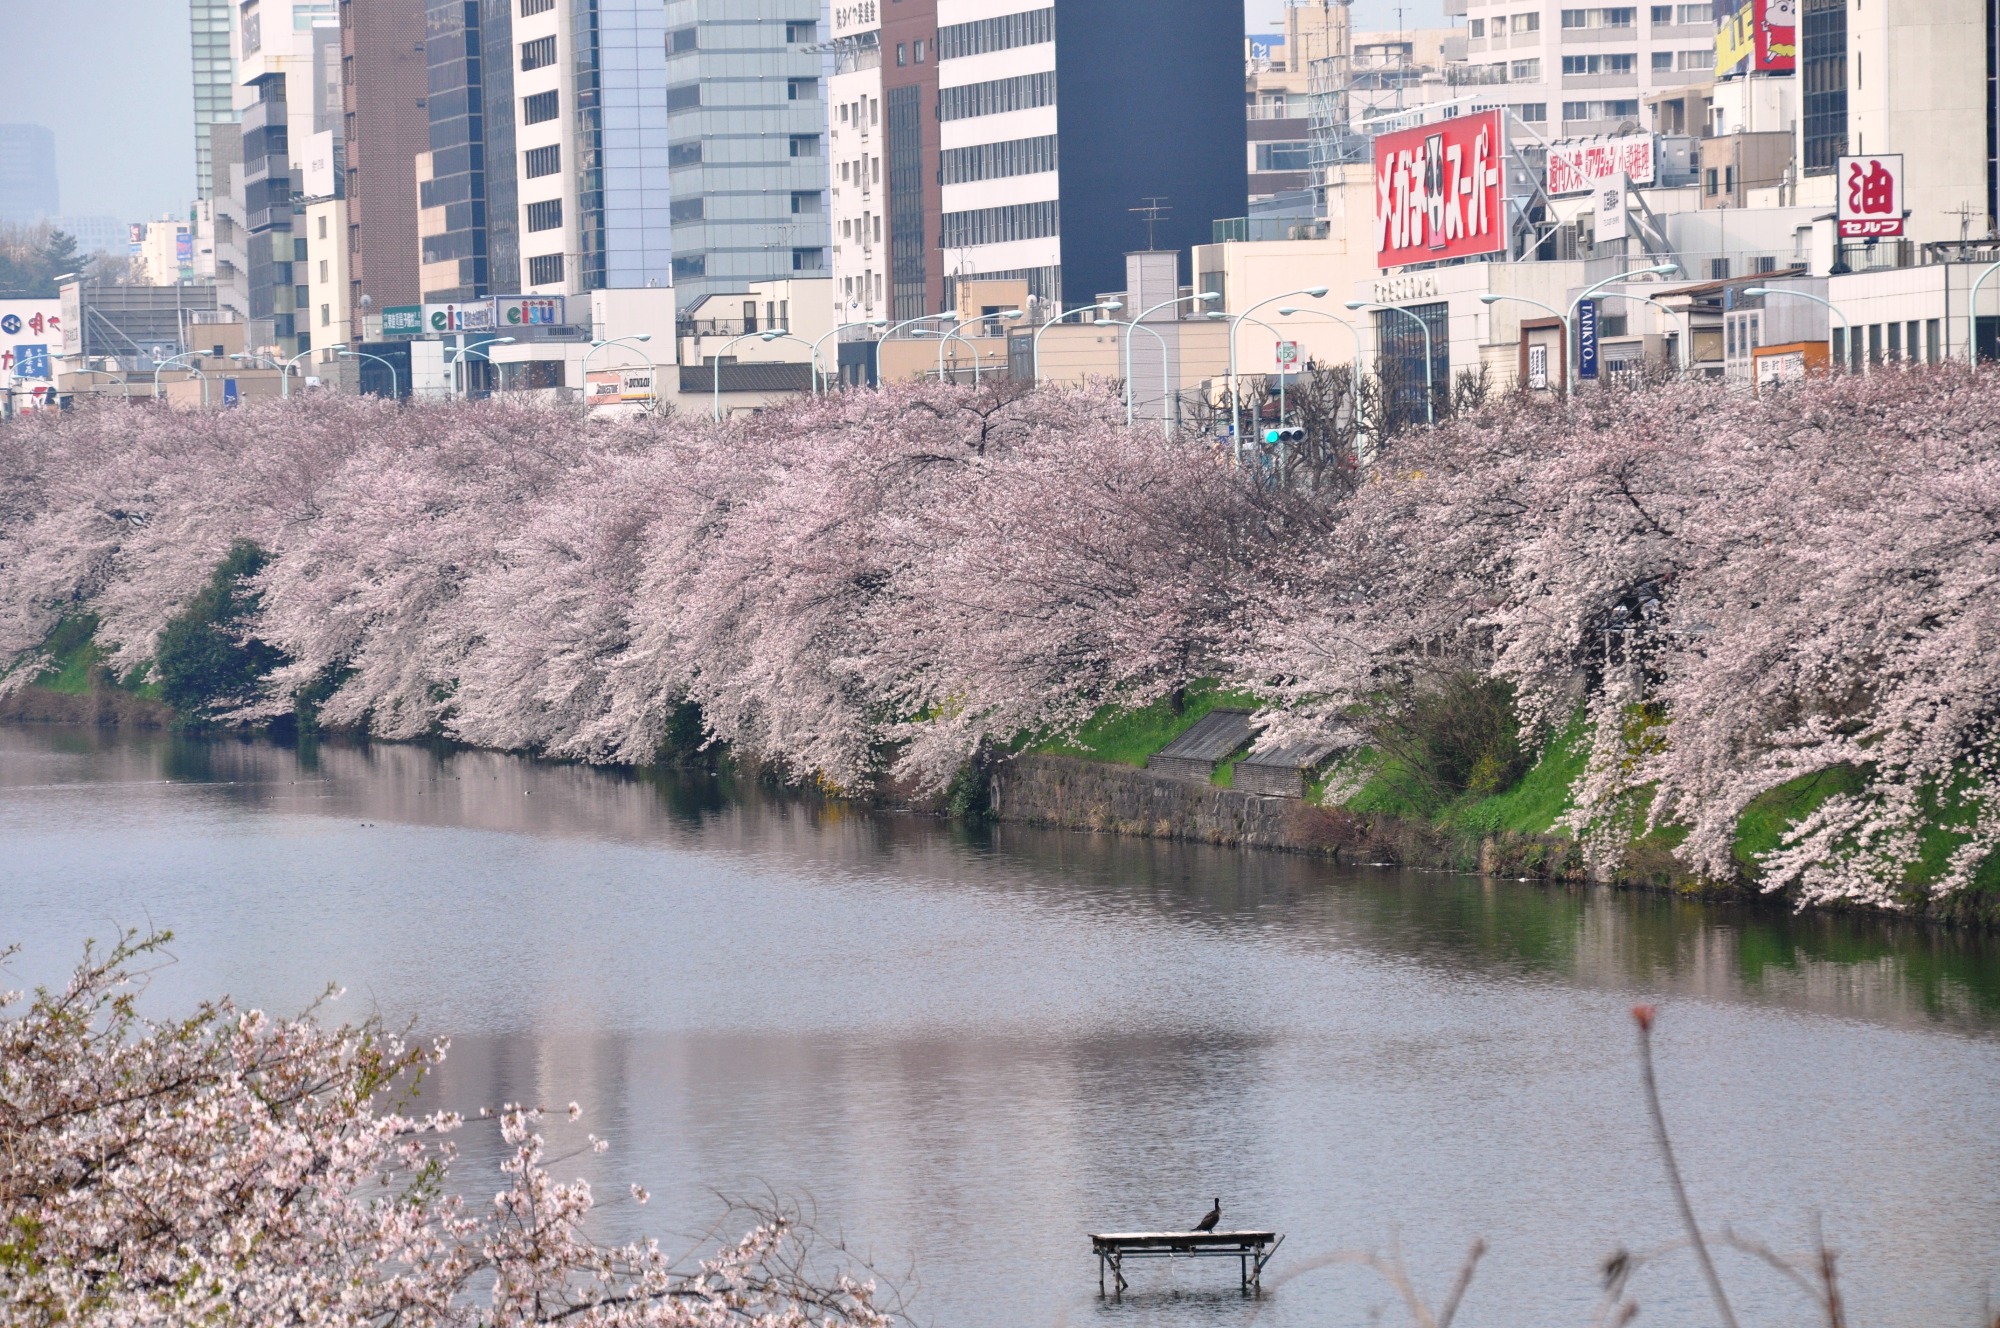 今年の花見は散歩スタイルで 千代田区の花見スポット Visit Chiyoda